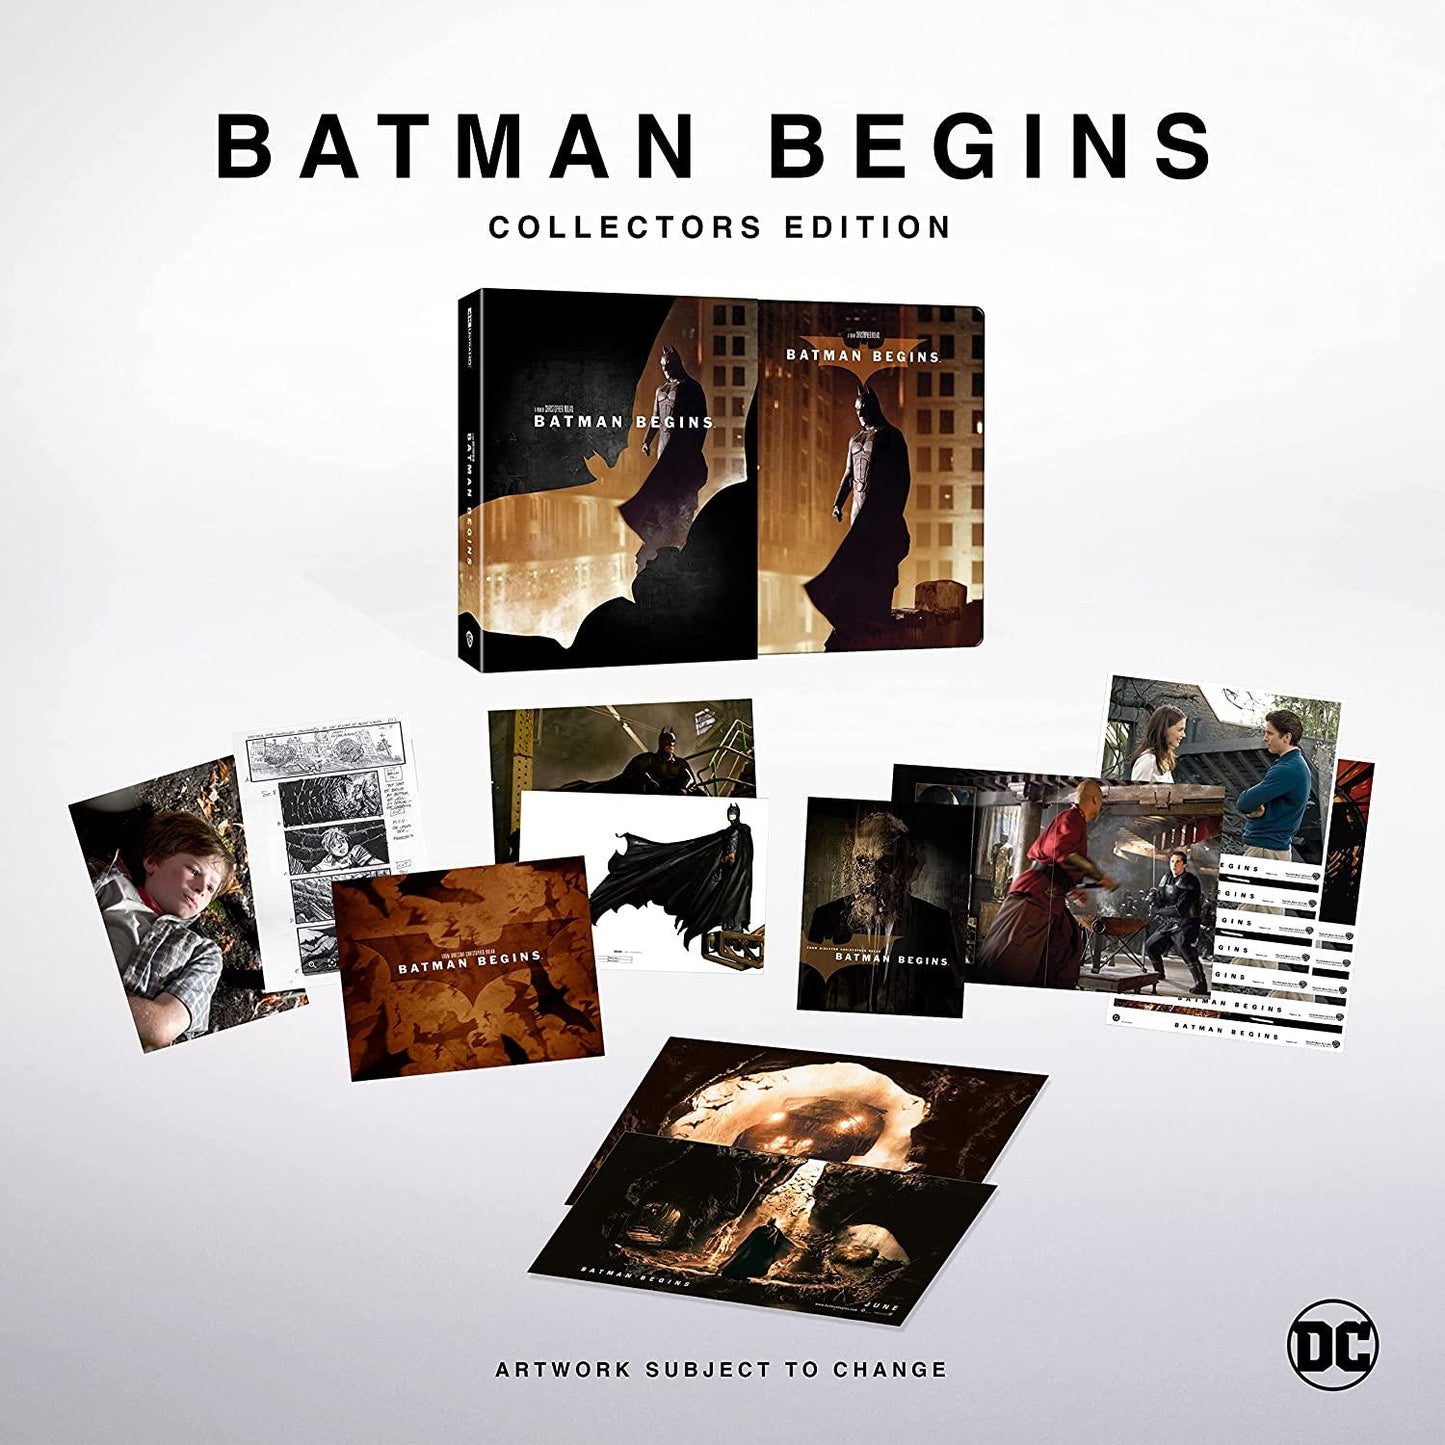 Бэтмен: Начало (4K UHD + Blu-ray) Ultimate Collector's Edition Steelbook